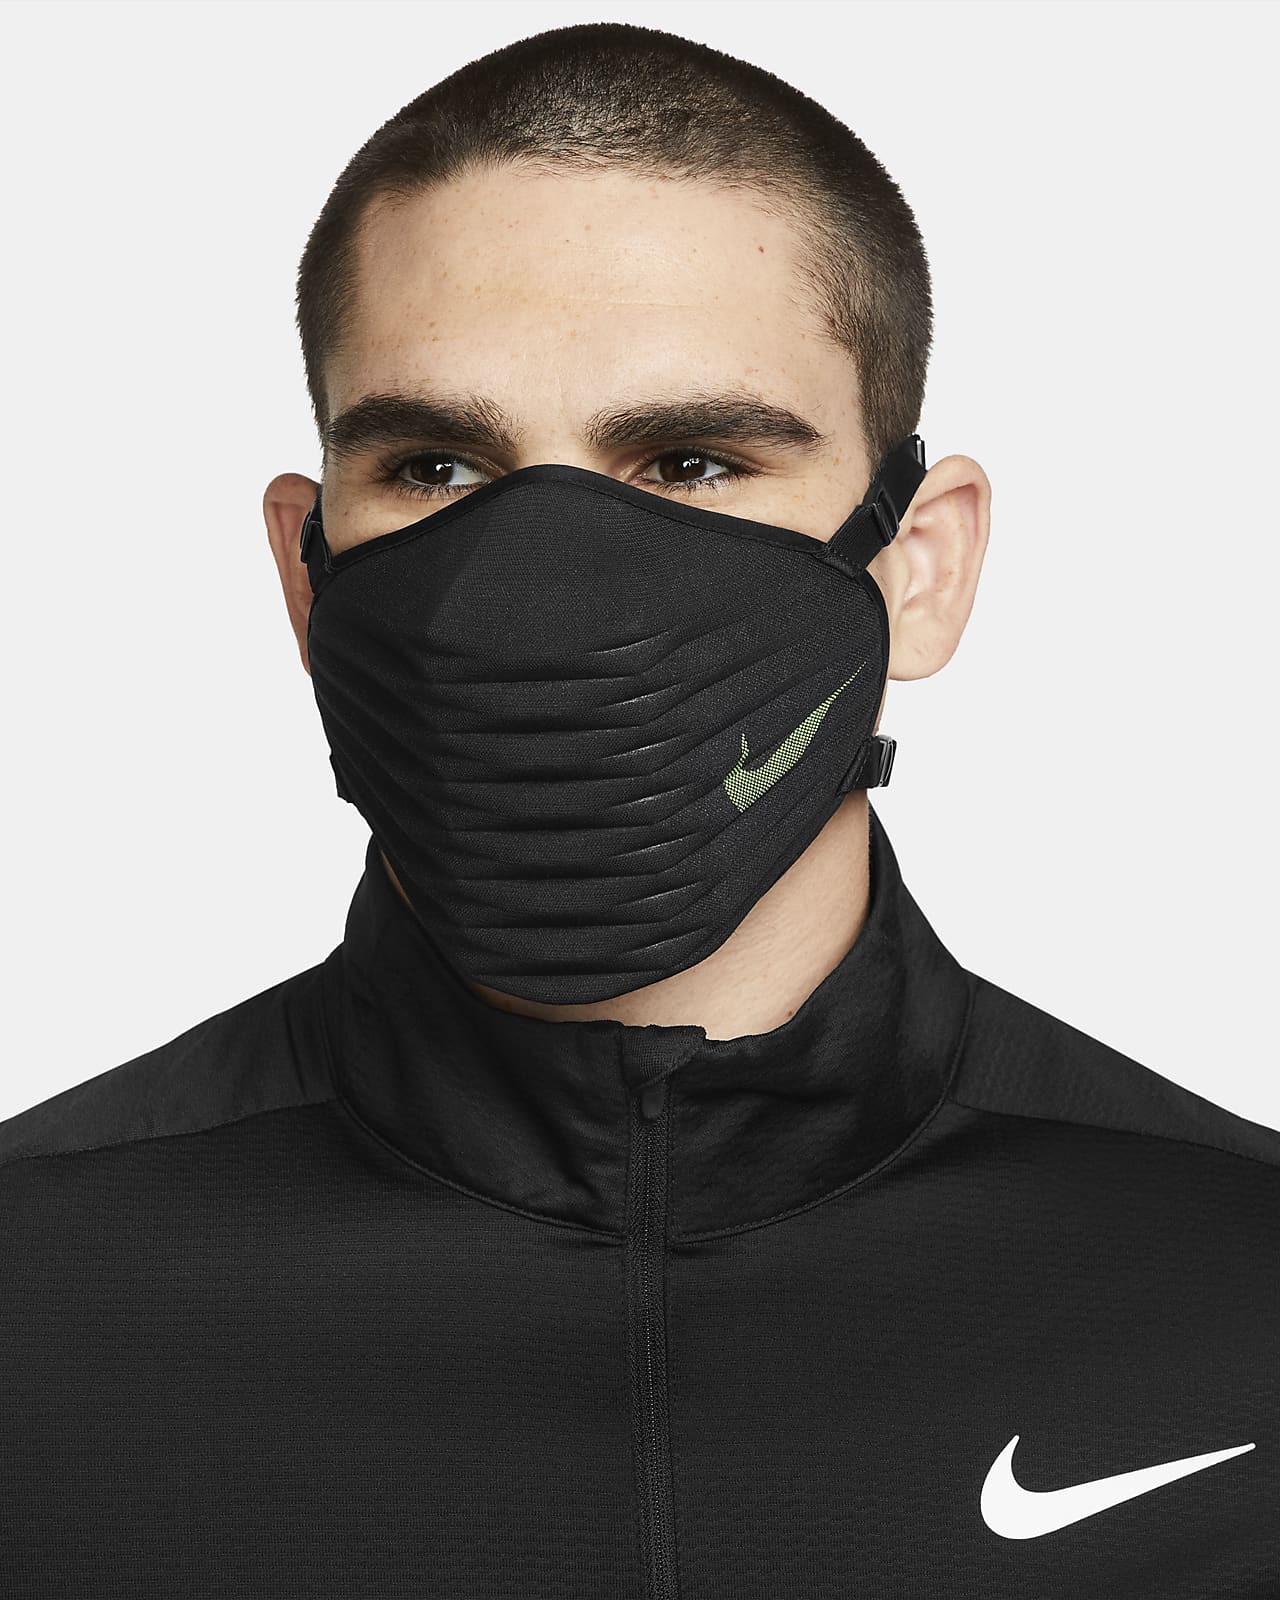 Mascara Da Nike | ubicaciondepersonas.cdmx.gob.mx